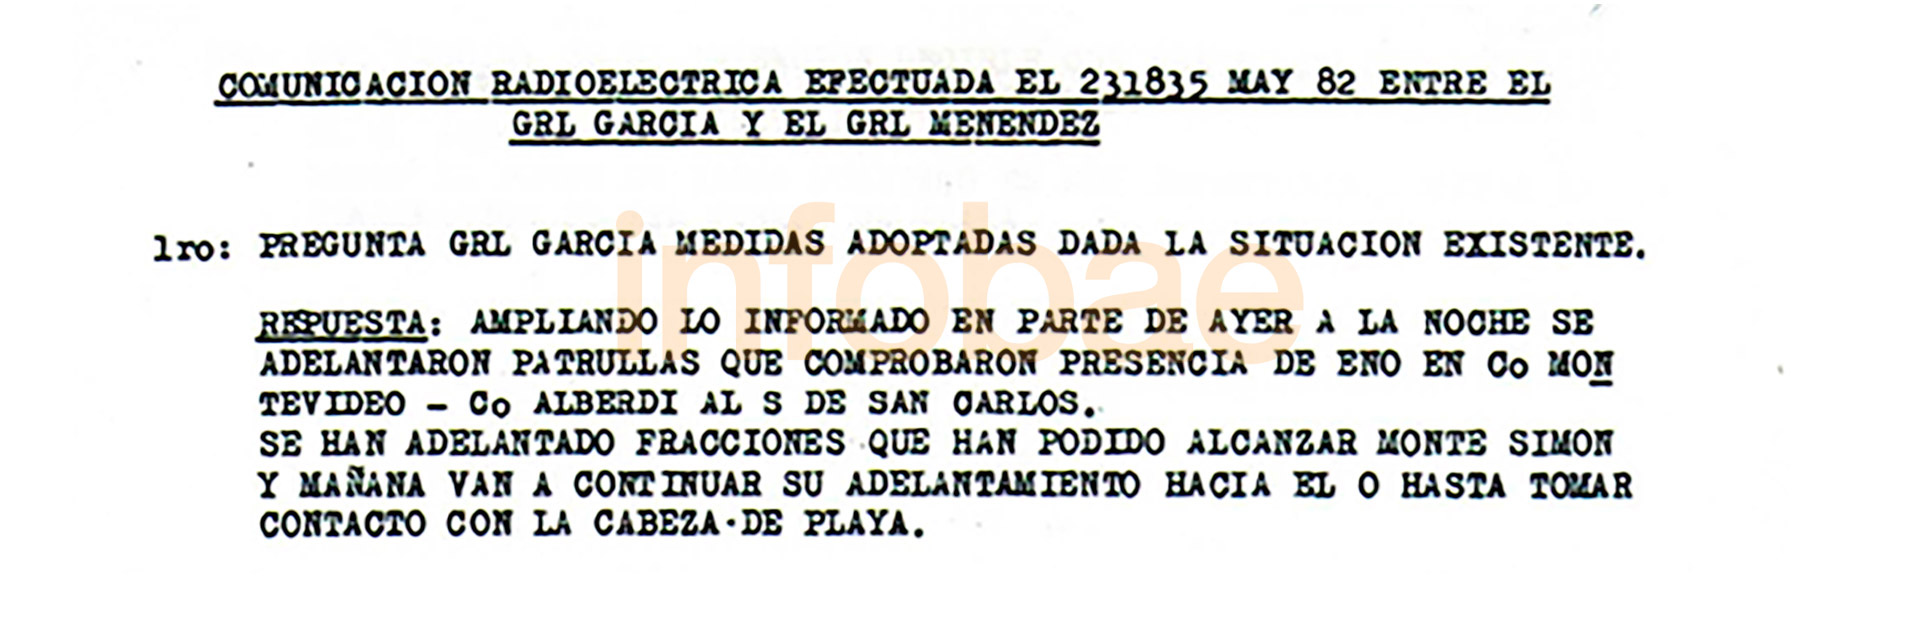 La conversación del 23 de mayo de 1982, dos días después del desembarco, entre el general de división Osvaldo García, comandante del V Cuerpo, y el general de brigada Mario Benjamín Menéndez 